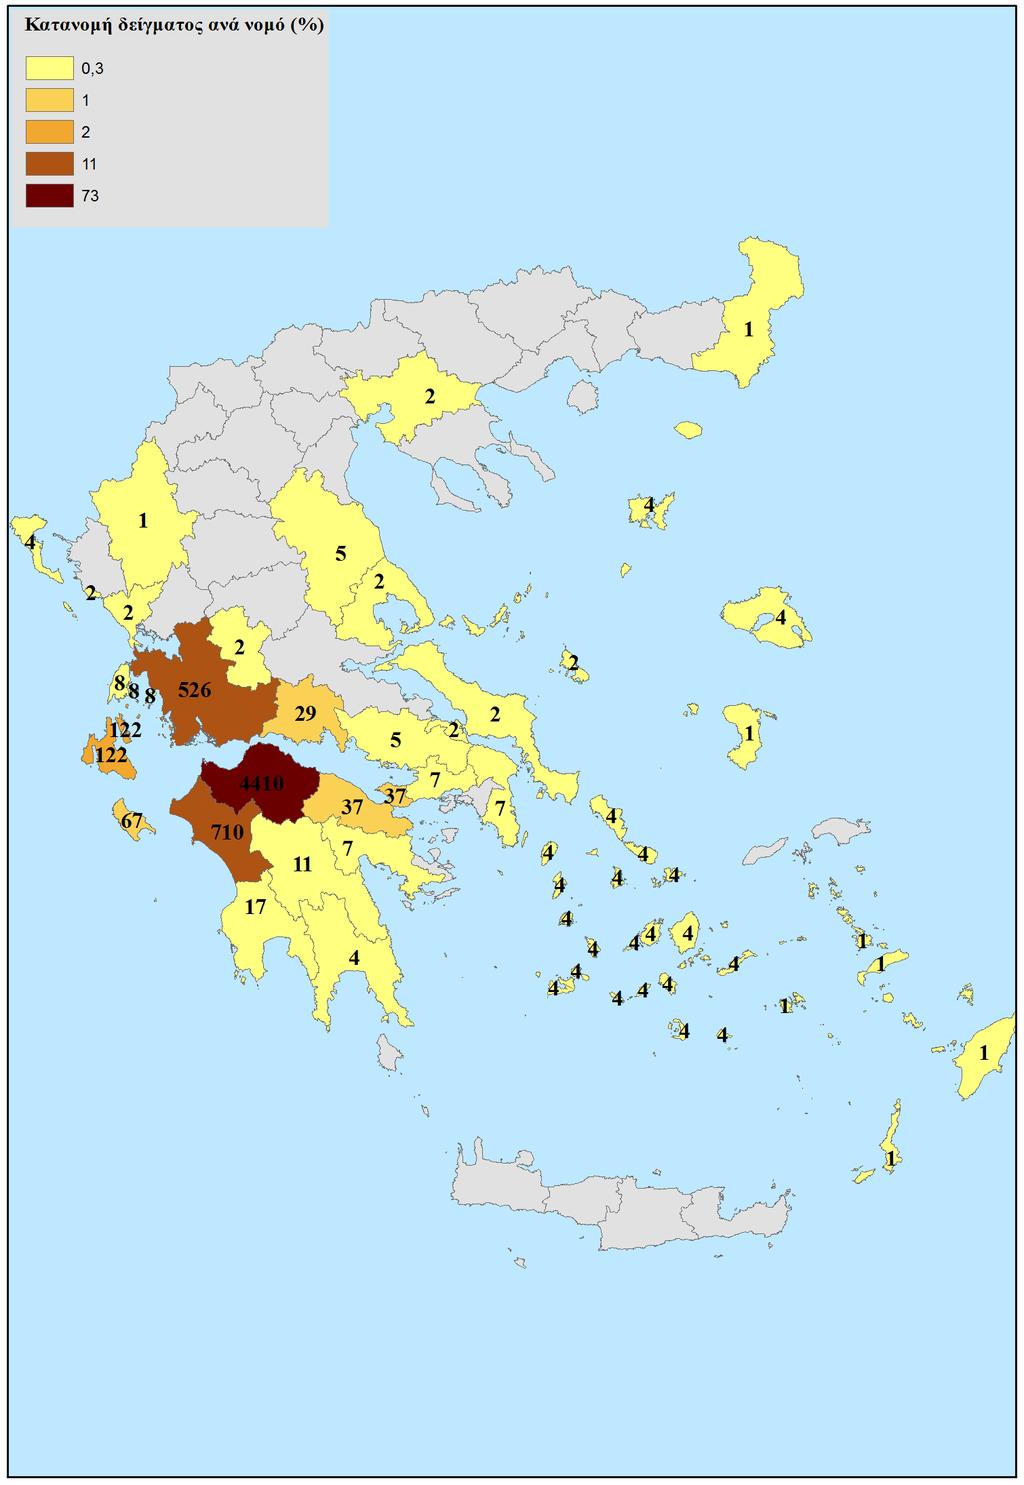 Εικόνα 3.1. Κατοικία μητέρας ανά νομό της Ελλάδας (χάρτης).